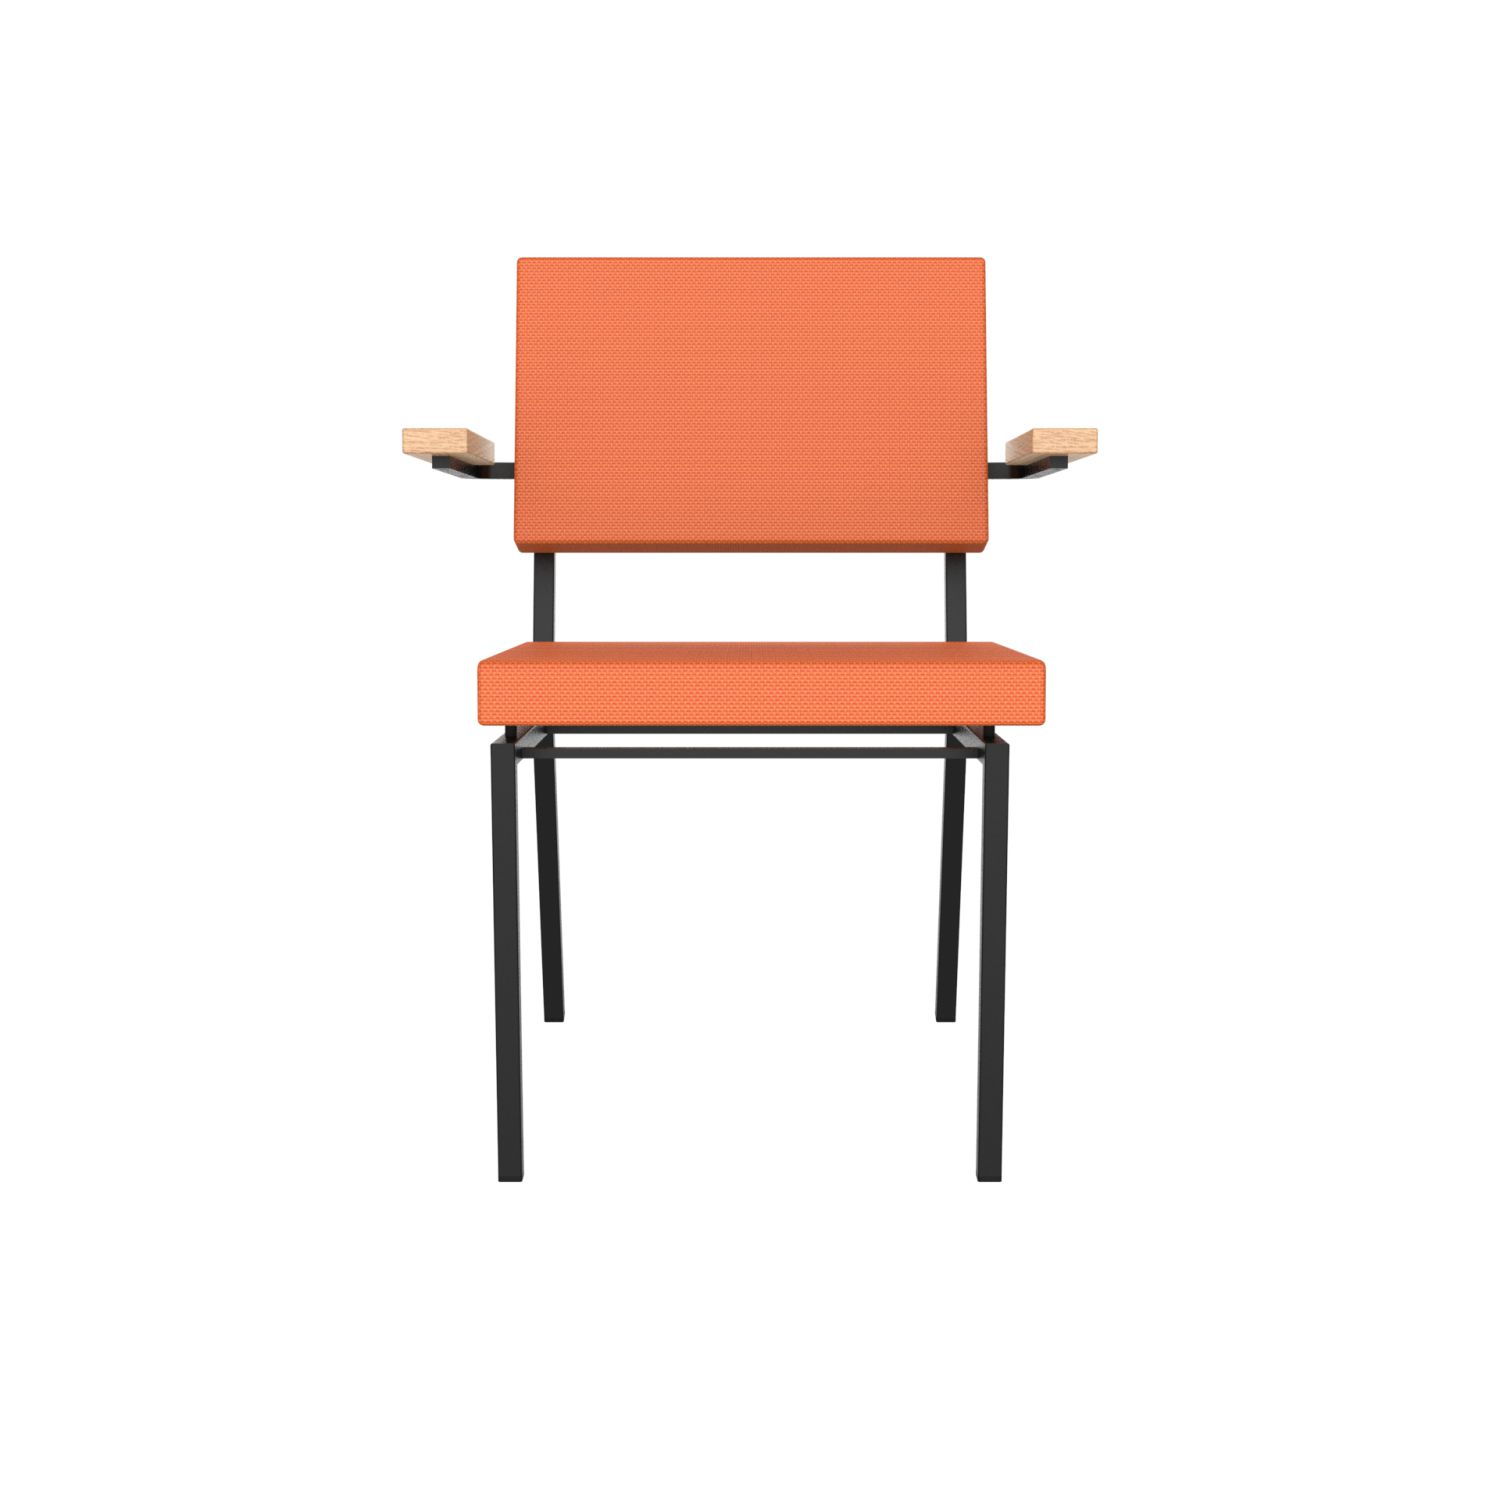 lensvelt gerrit veenendaal chair with armrests burn orange 102 price level 1 black frame ral9005 hard leg ends